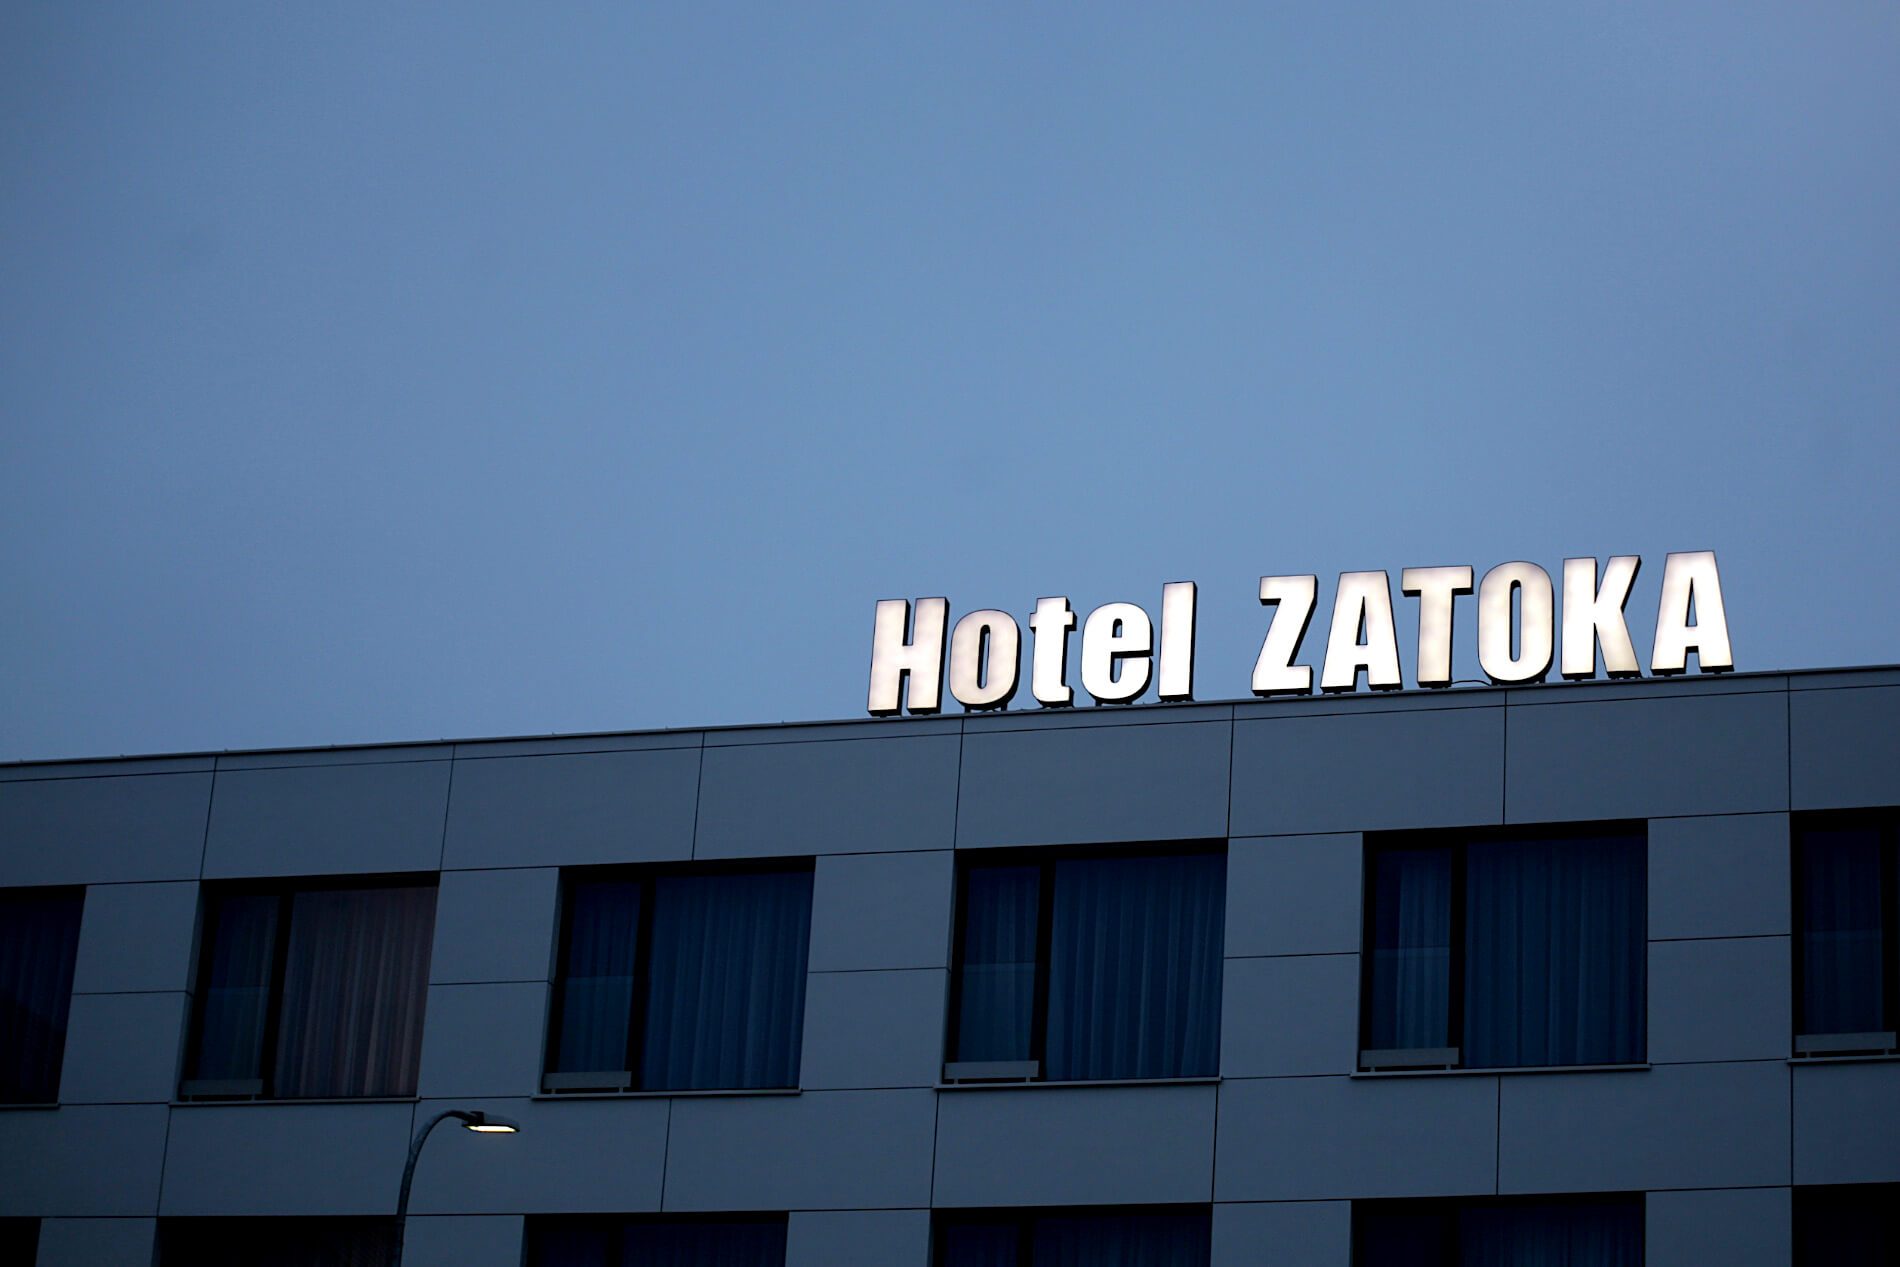 Albergo della Baia - Hotel Bay - scritte in plexiglas spaziale a LED sul tetto